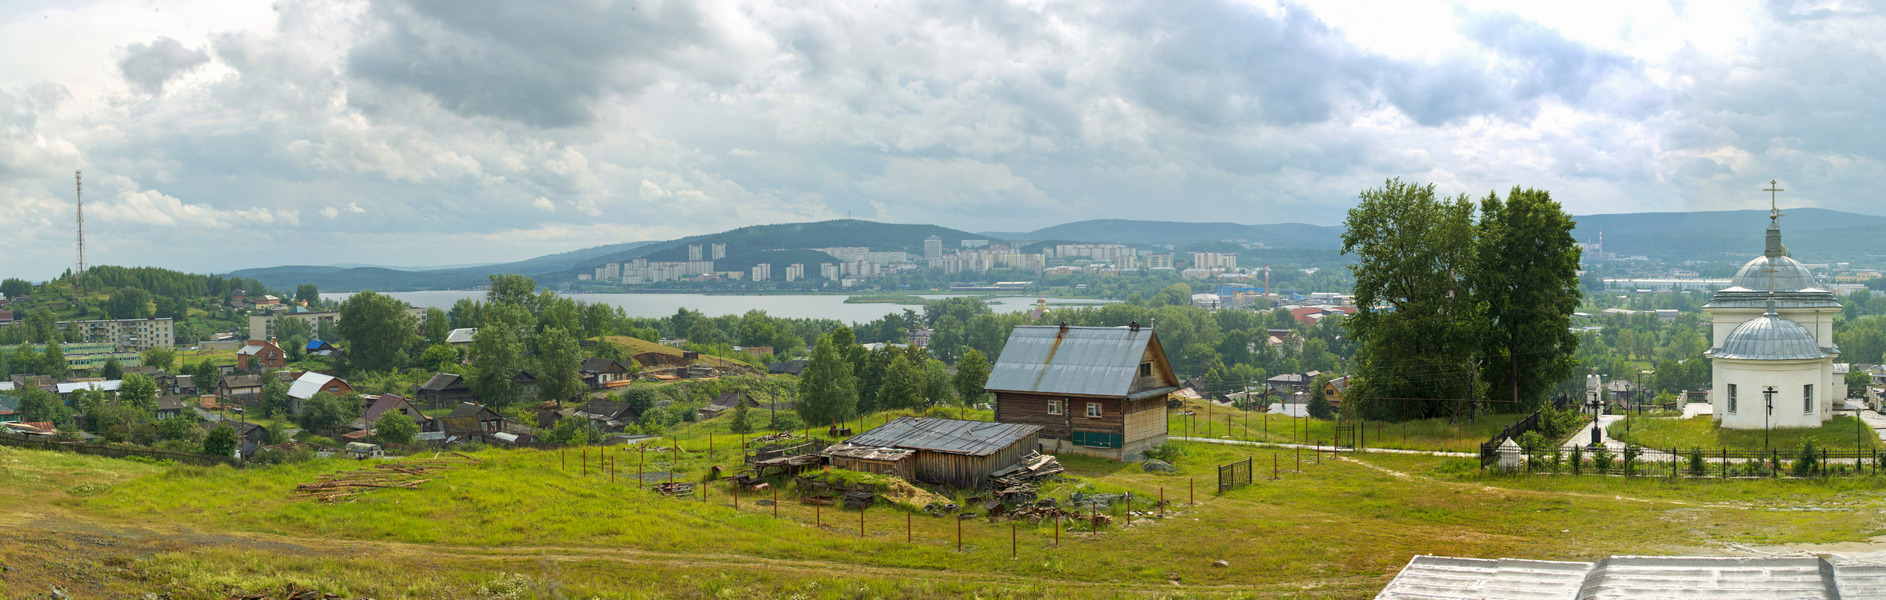 Novouralsk, Sverdlovsk Region, Russia / Photobank of Oleg Borisov / photobo.ru